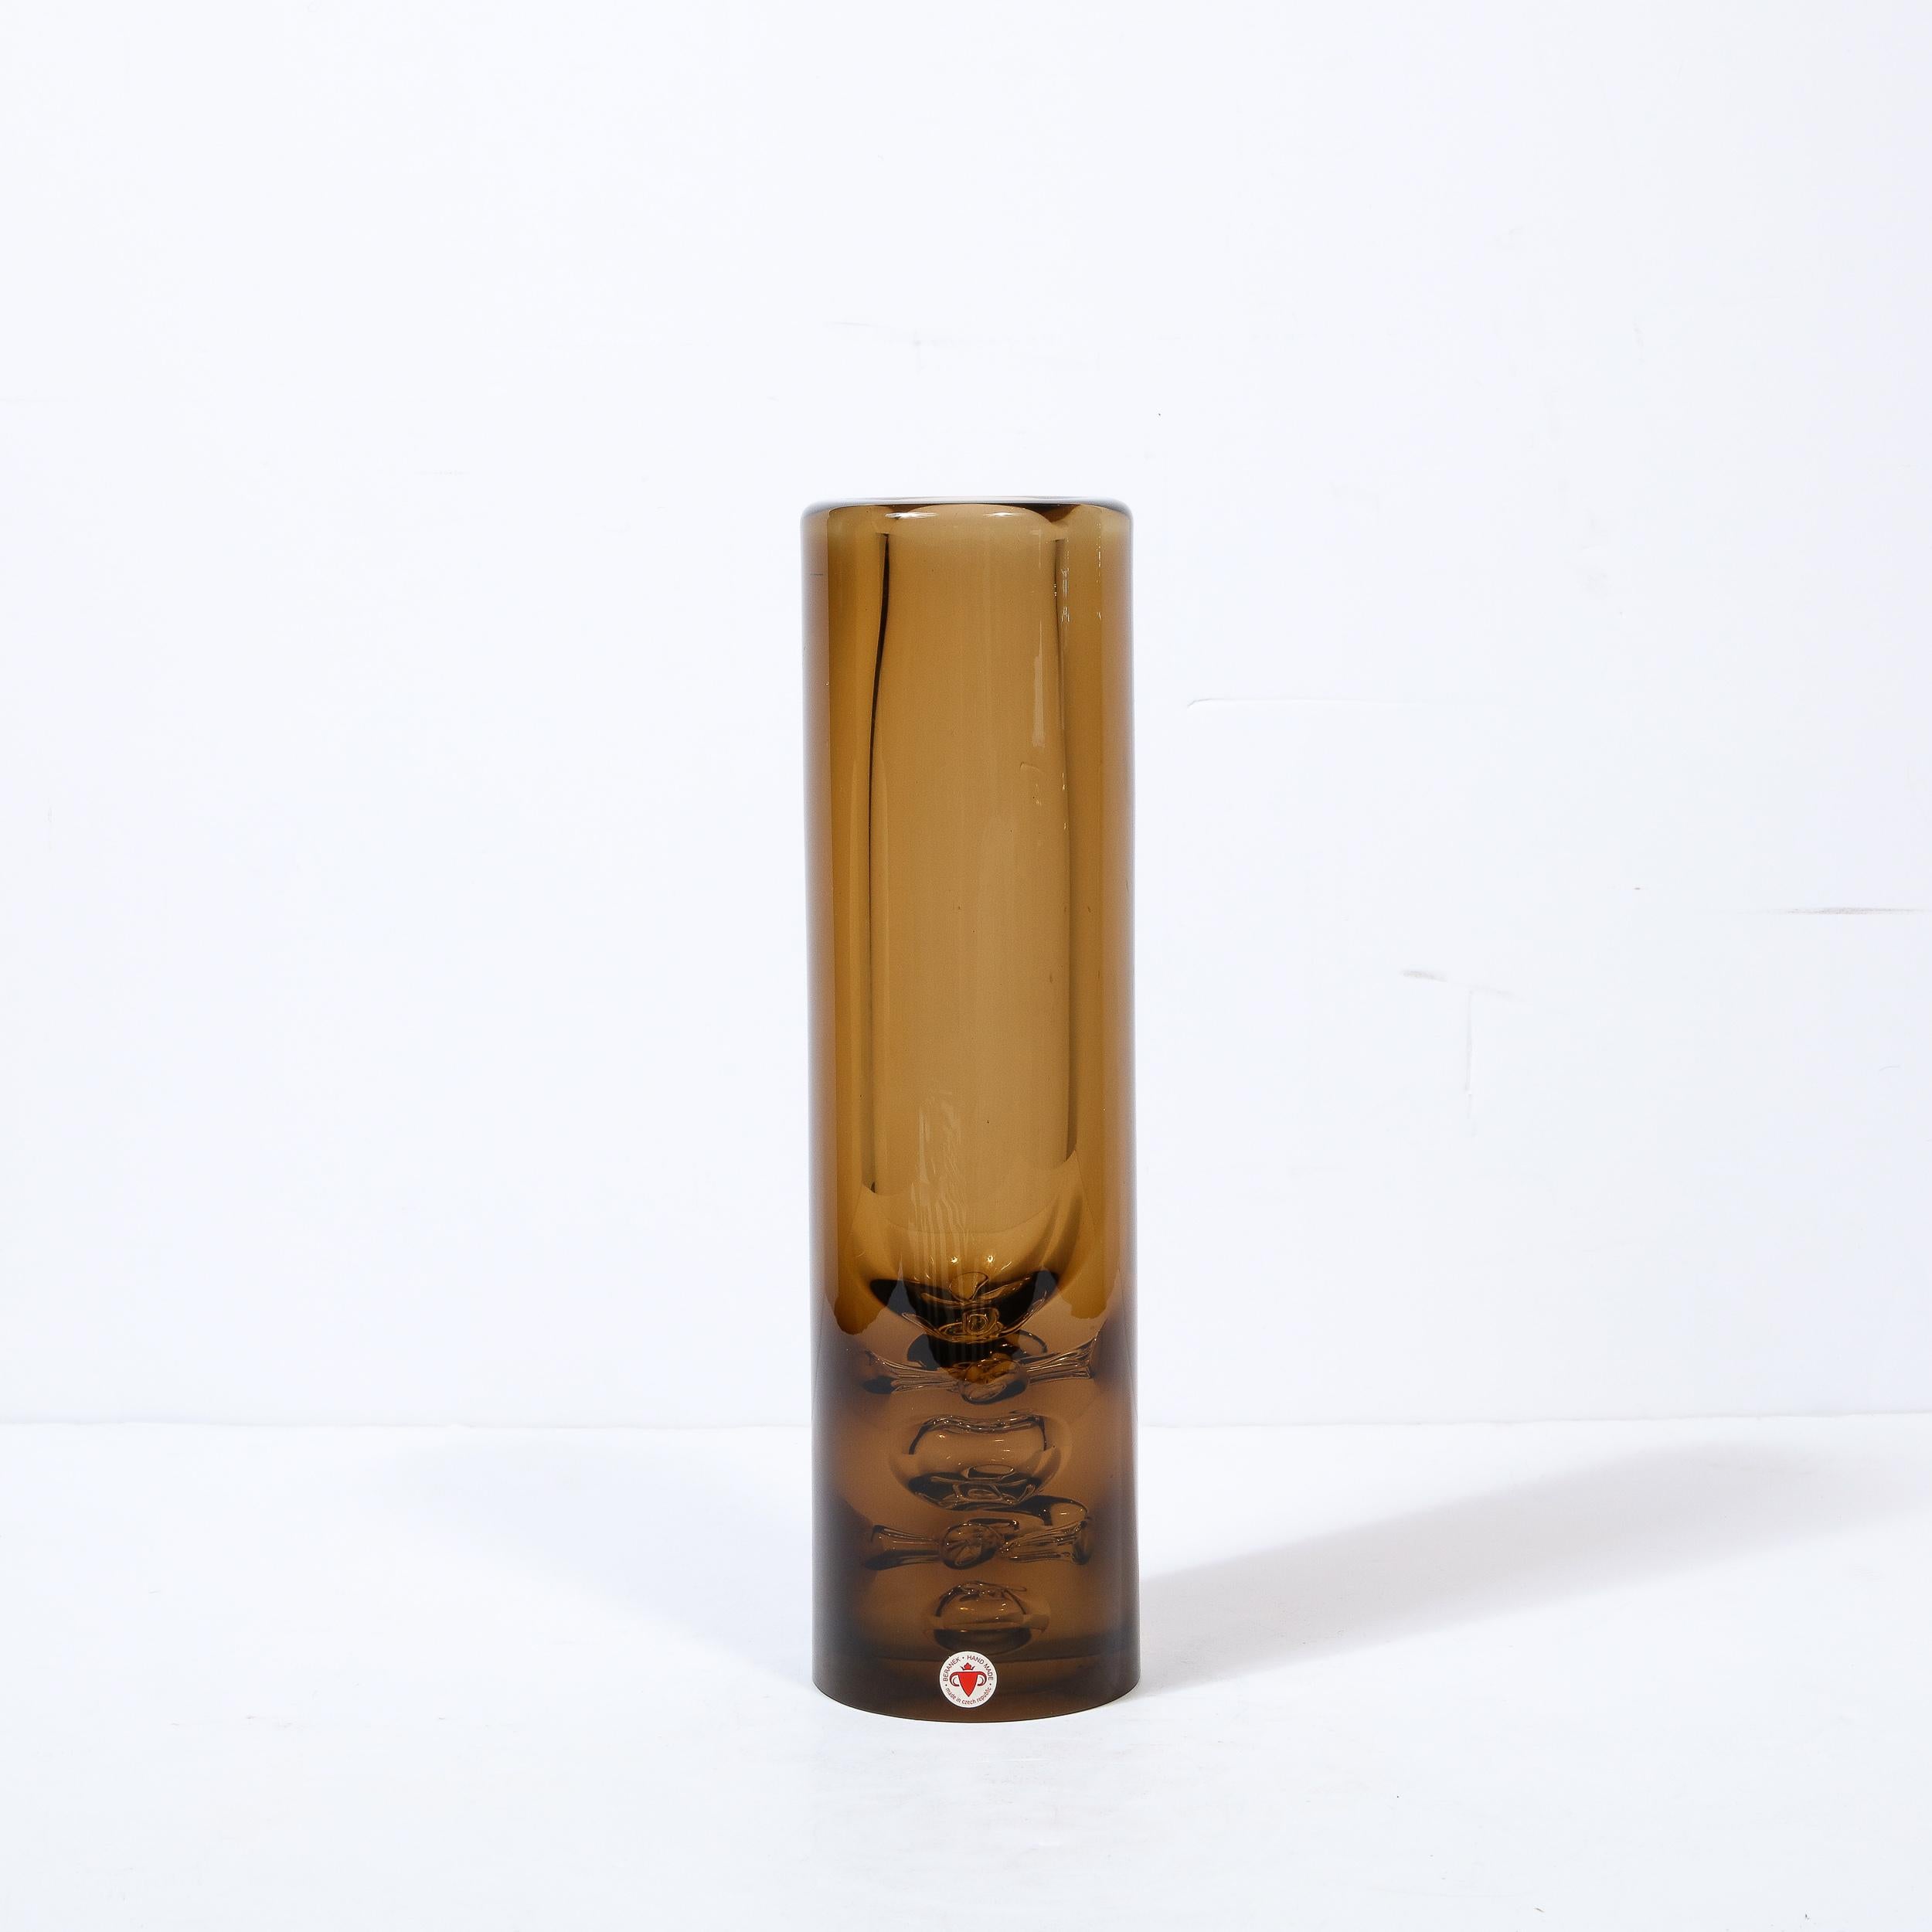 Diese schöne Vase aus mundgeblasenem Glas aus der Mitte des Jahrhunderts wurde von dem geschätzten Hersteller Baranek in der Tschechoslowakei um 1960 hergestellt. Der zylindrische Körper besteht aus durchscheinendem Glas in einem üppigen, rauchigen